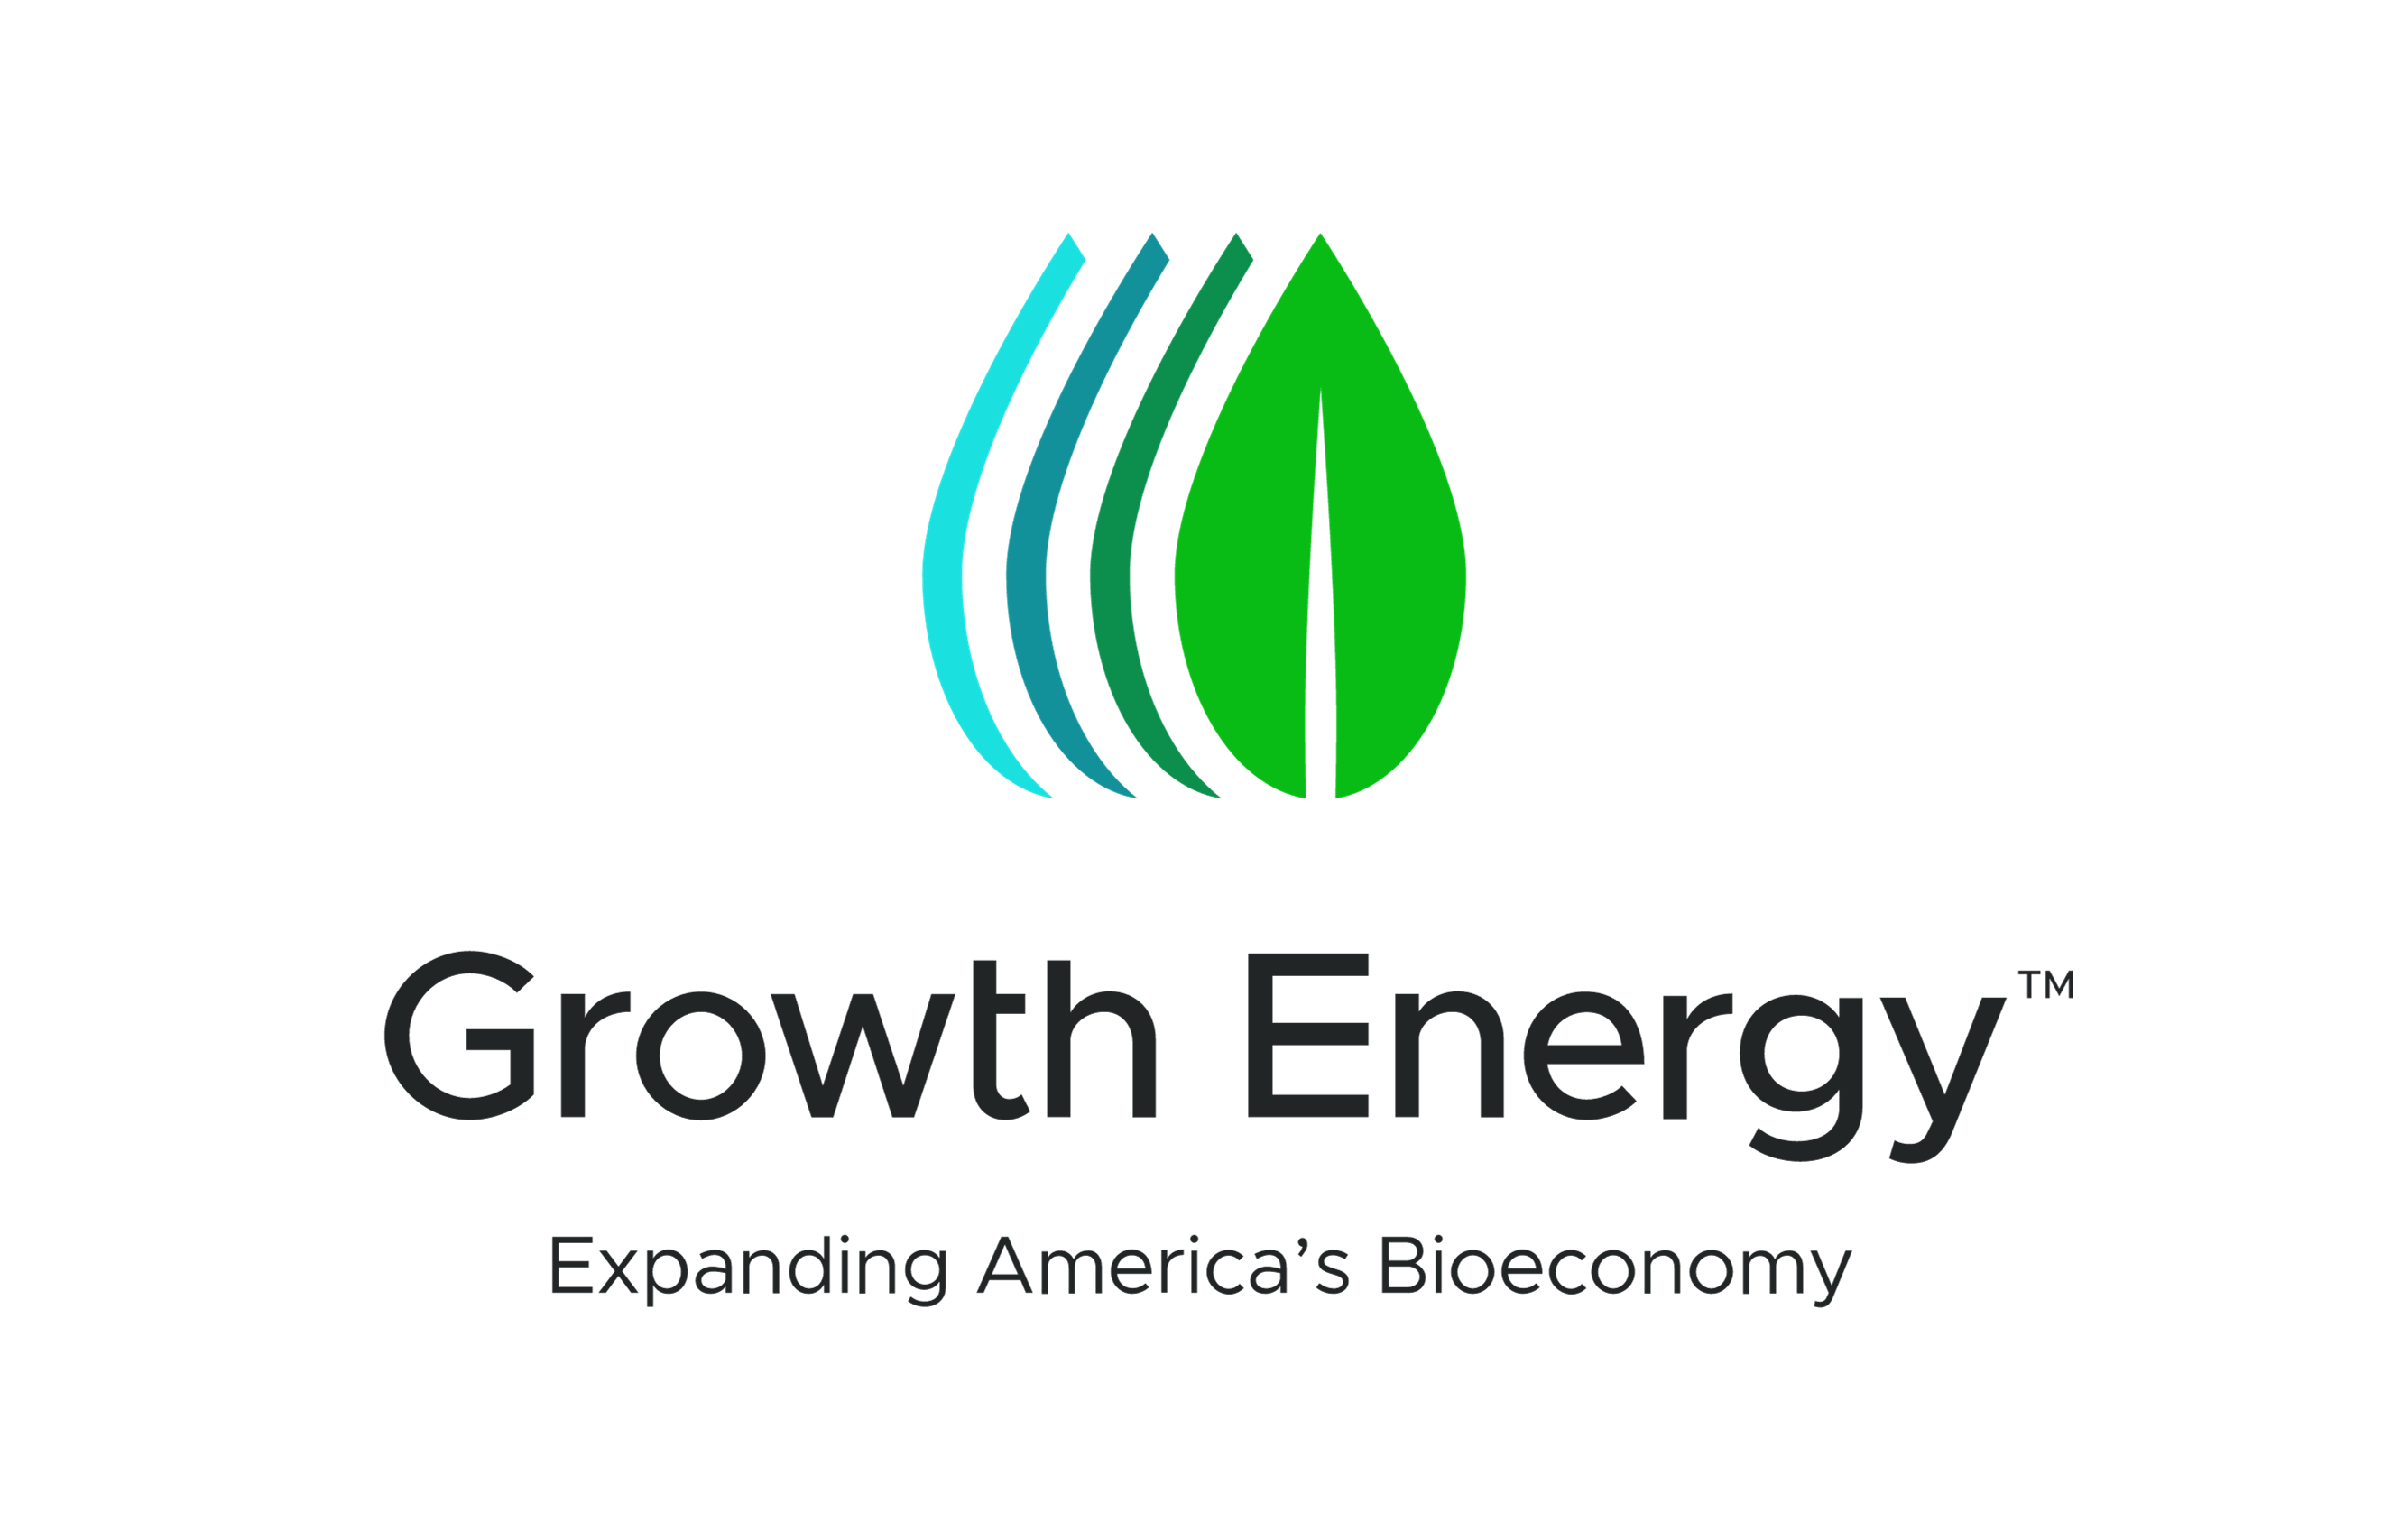 Growth Energy Rebrand - Expanding America's Bioeconomy